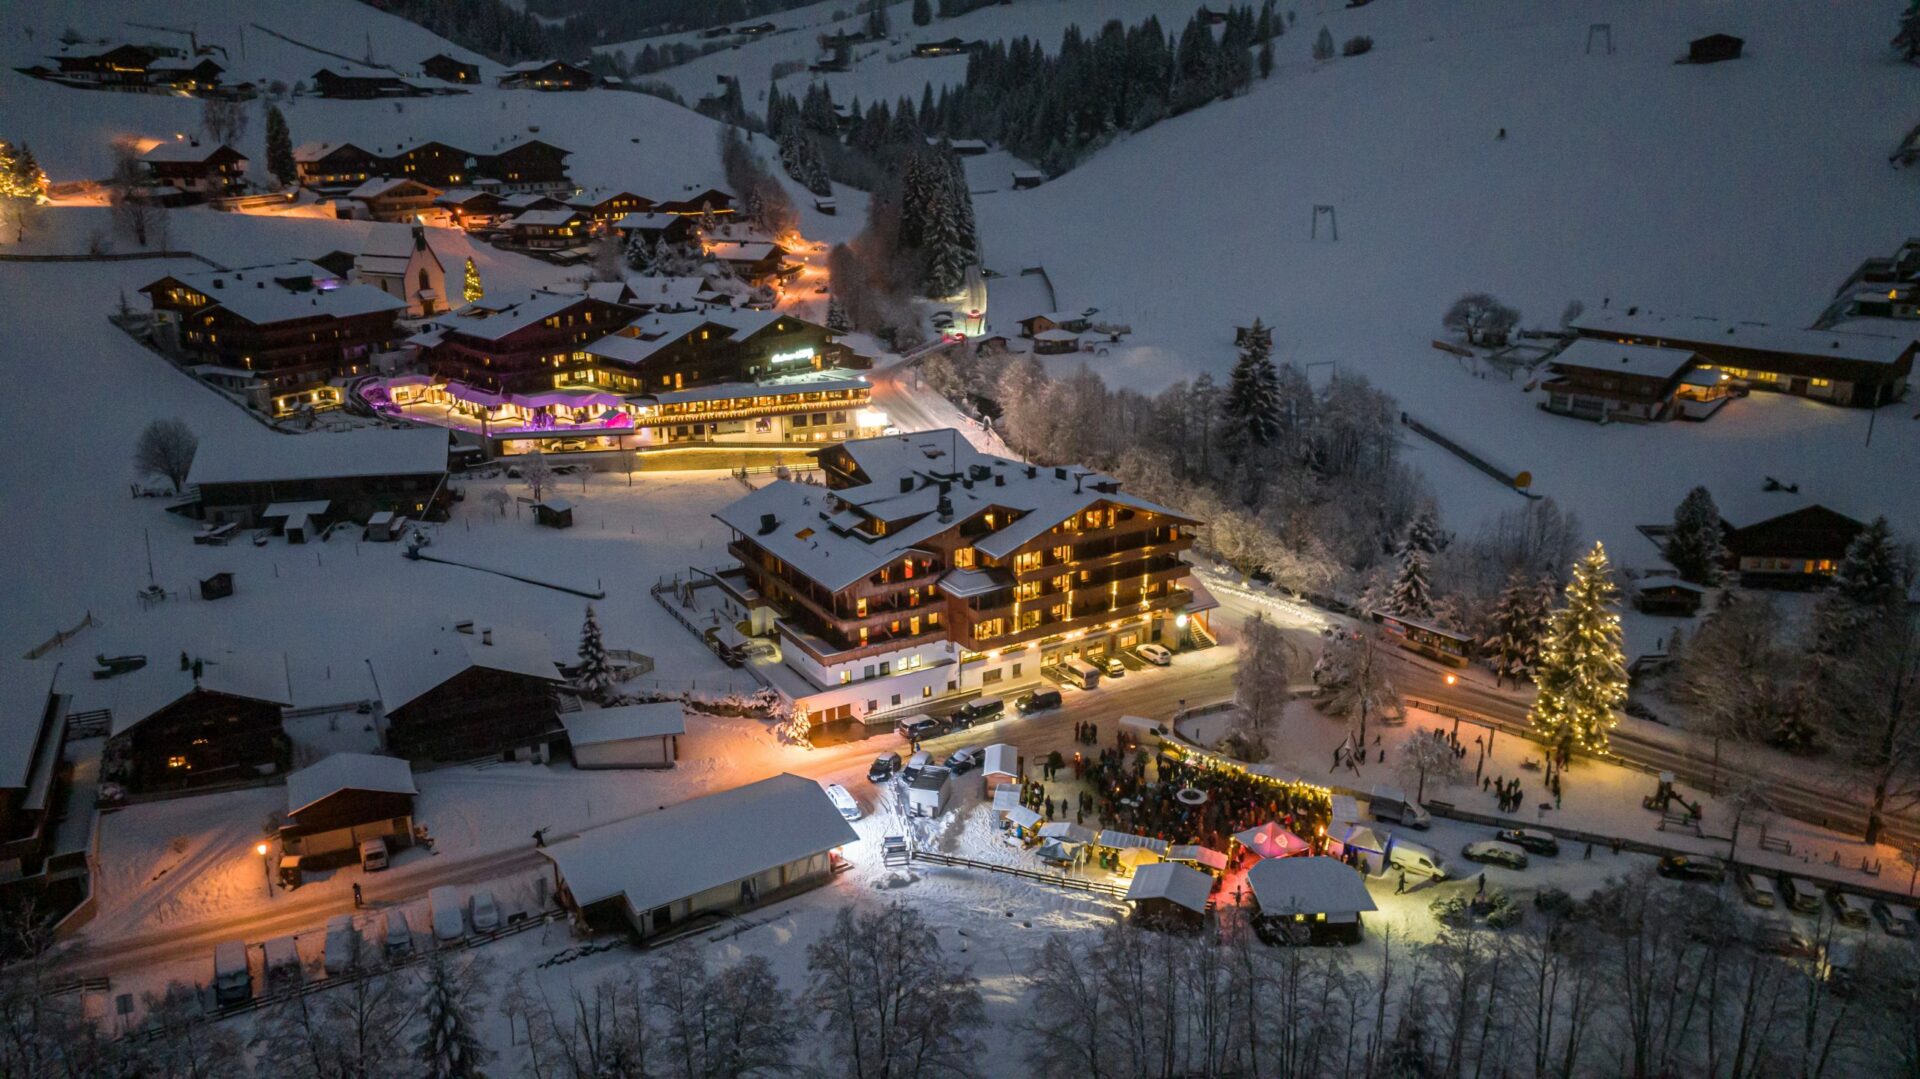 Eine Luftaufnahme des Galtenberg Hotels bei Nacht im Winter.